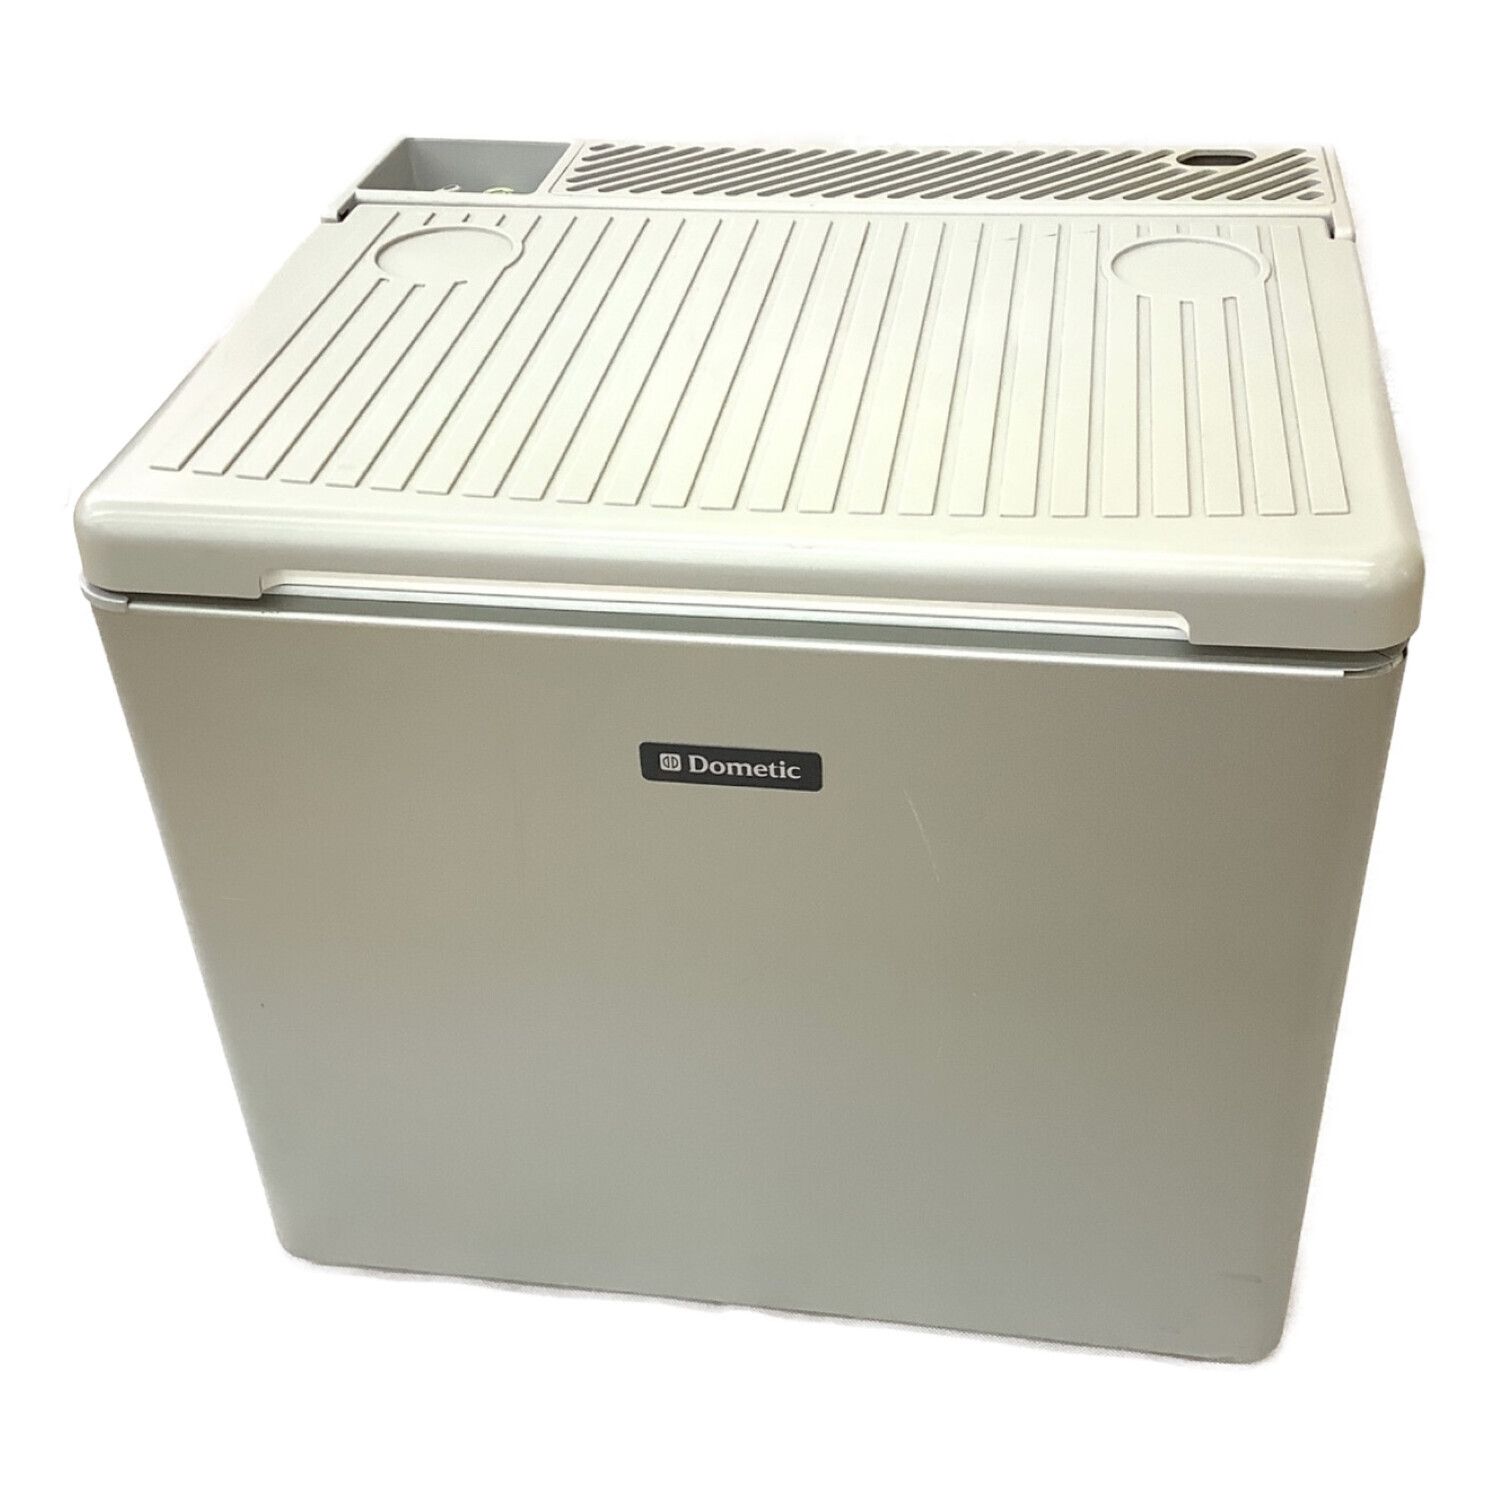 Dometic (ドメティック) ポータブル冷蔵庫 33L 2014年製 ※ガス・AC電源